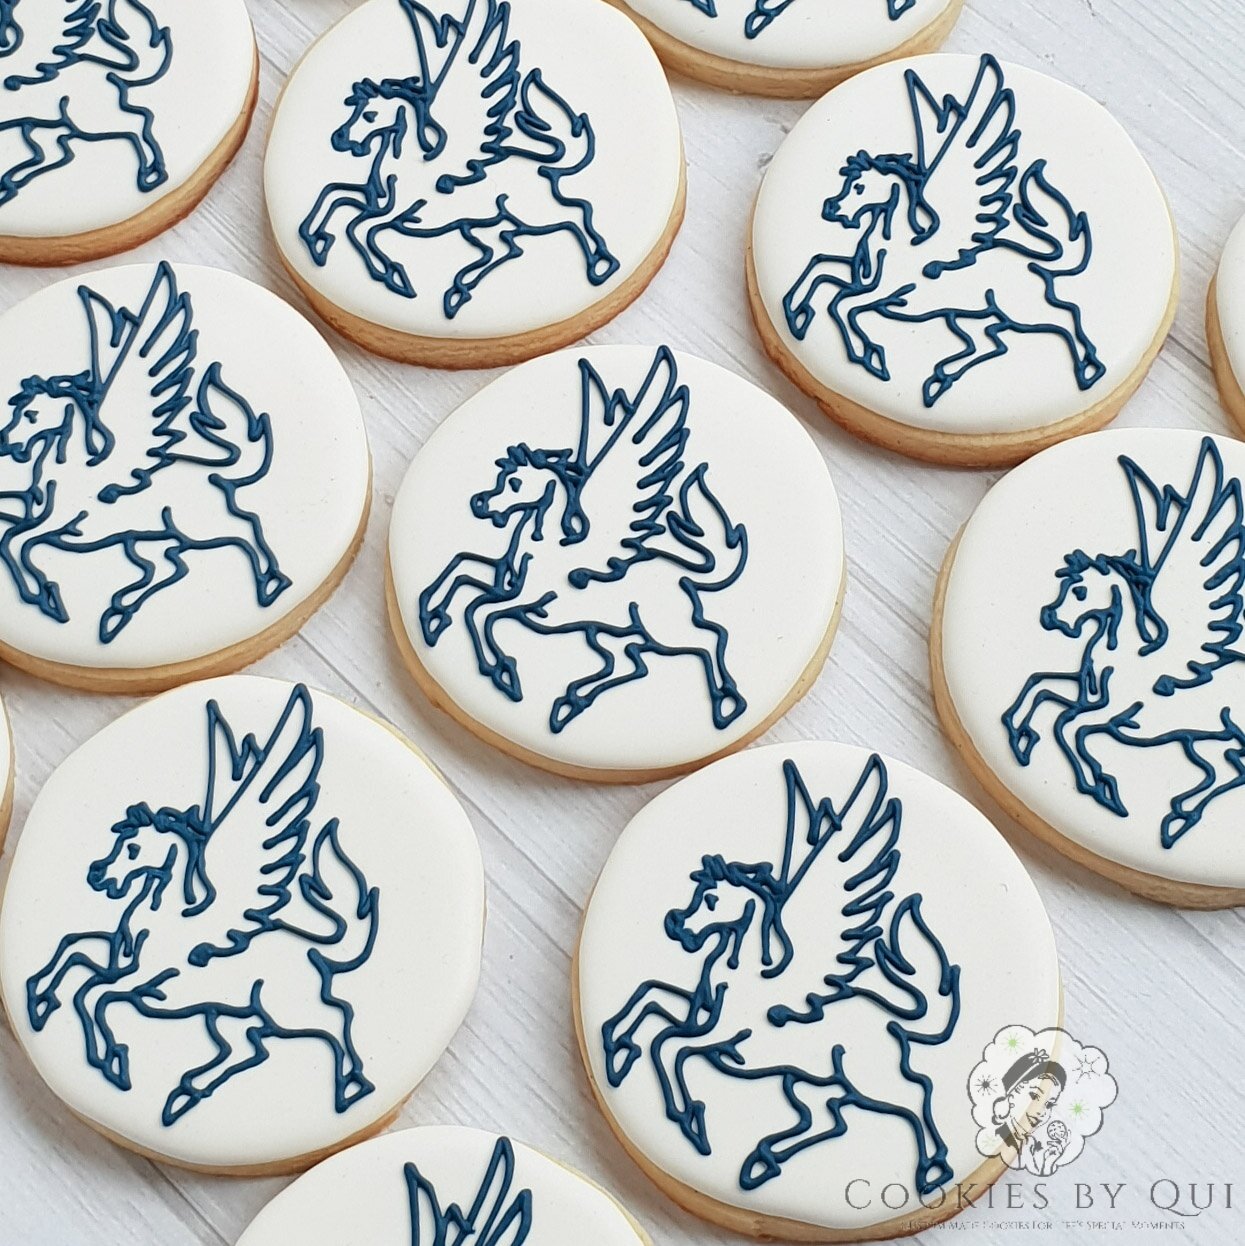 Geelong Grammar Pegasus Logo Themed Cookies - Cookies by Qui Geelong.jpg